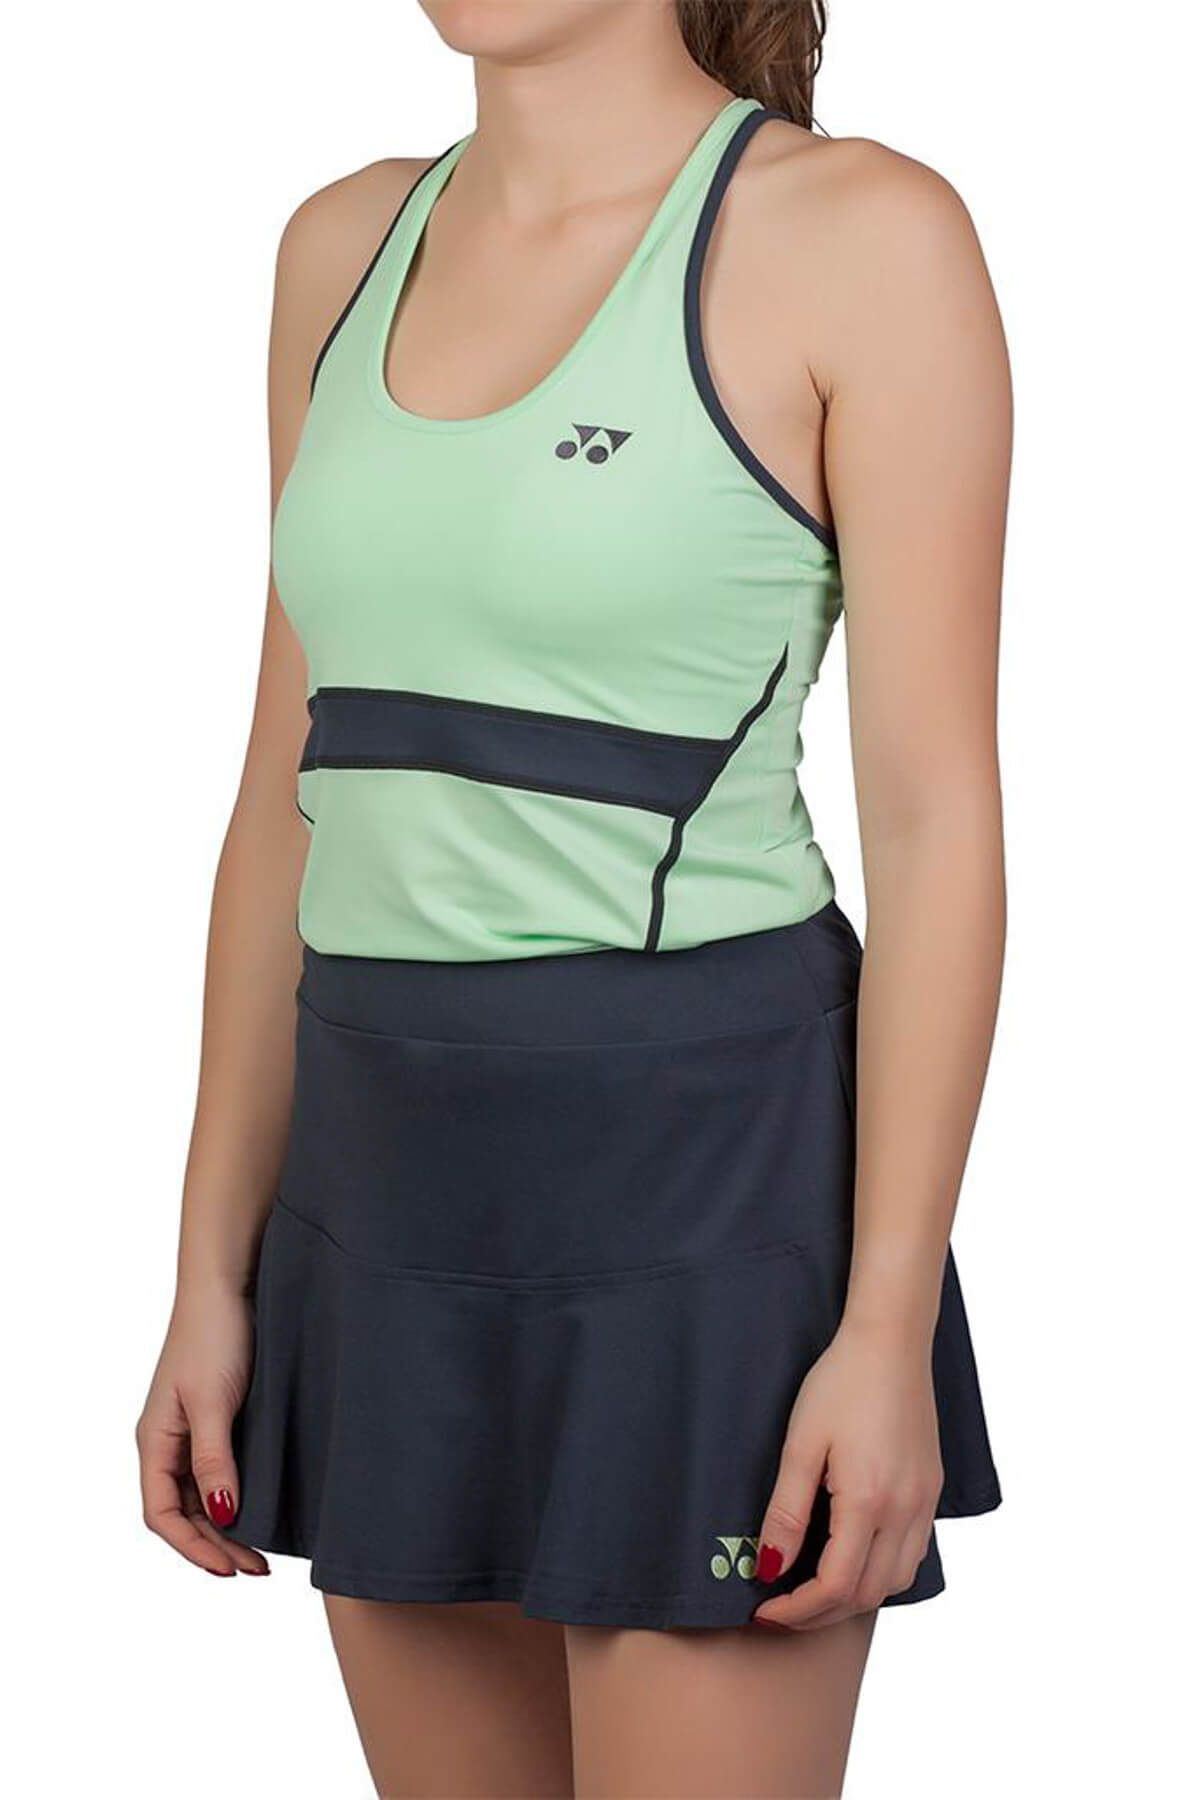 Yonex Kadın Tenis Atleti - Avustralya Açık Koleksiyonu - L20398